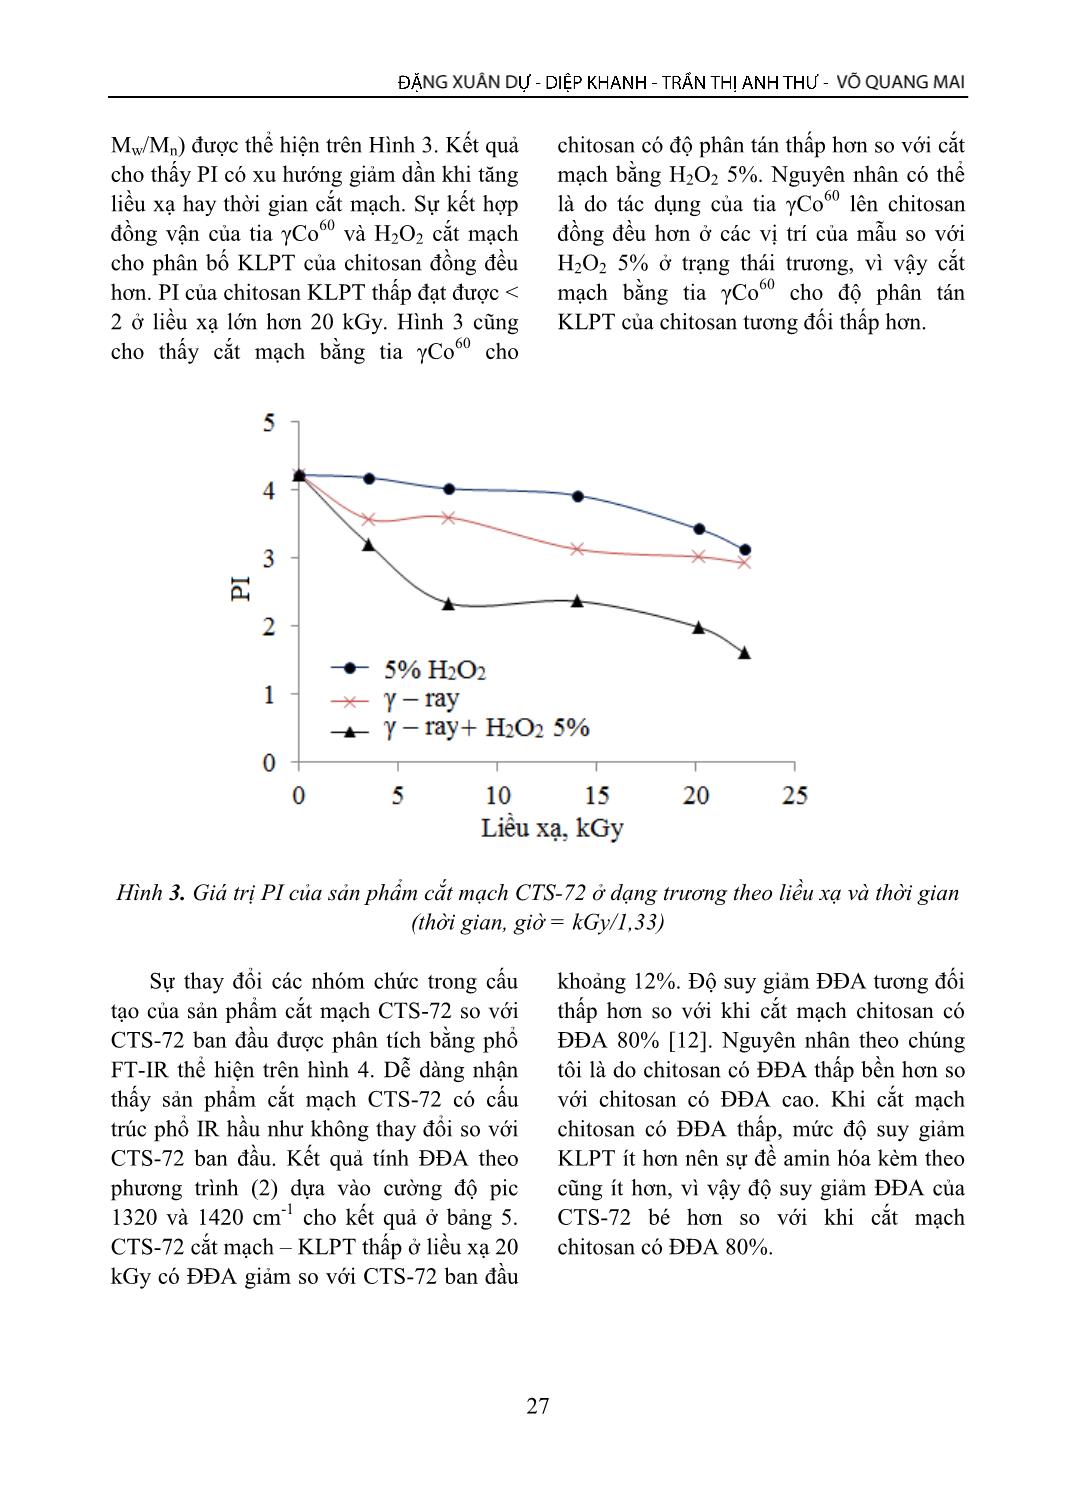 Nghiên cứu tác dụng đồng vận của tia Gamma Co-60 và Hydropeoxit cắt mạch Chitosan có độ đề Axetyl khoảng 70% ở trạng thái trương trang 7